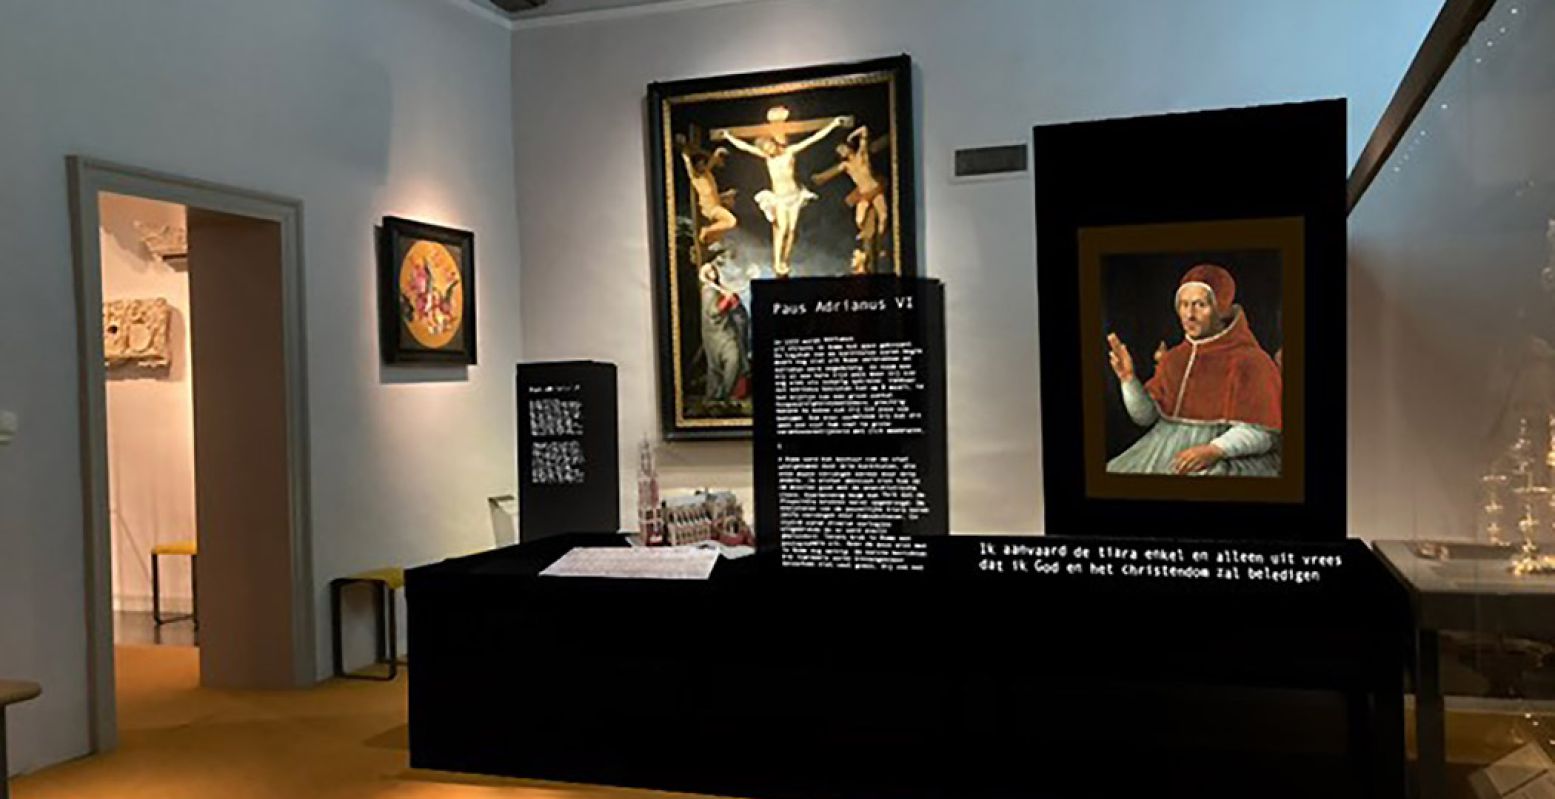 Impression van de expositie over de Nederlandse Paus Adrianus VI. Foto: © Marleen Bos